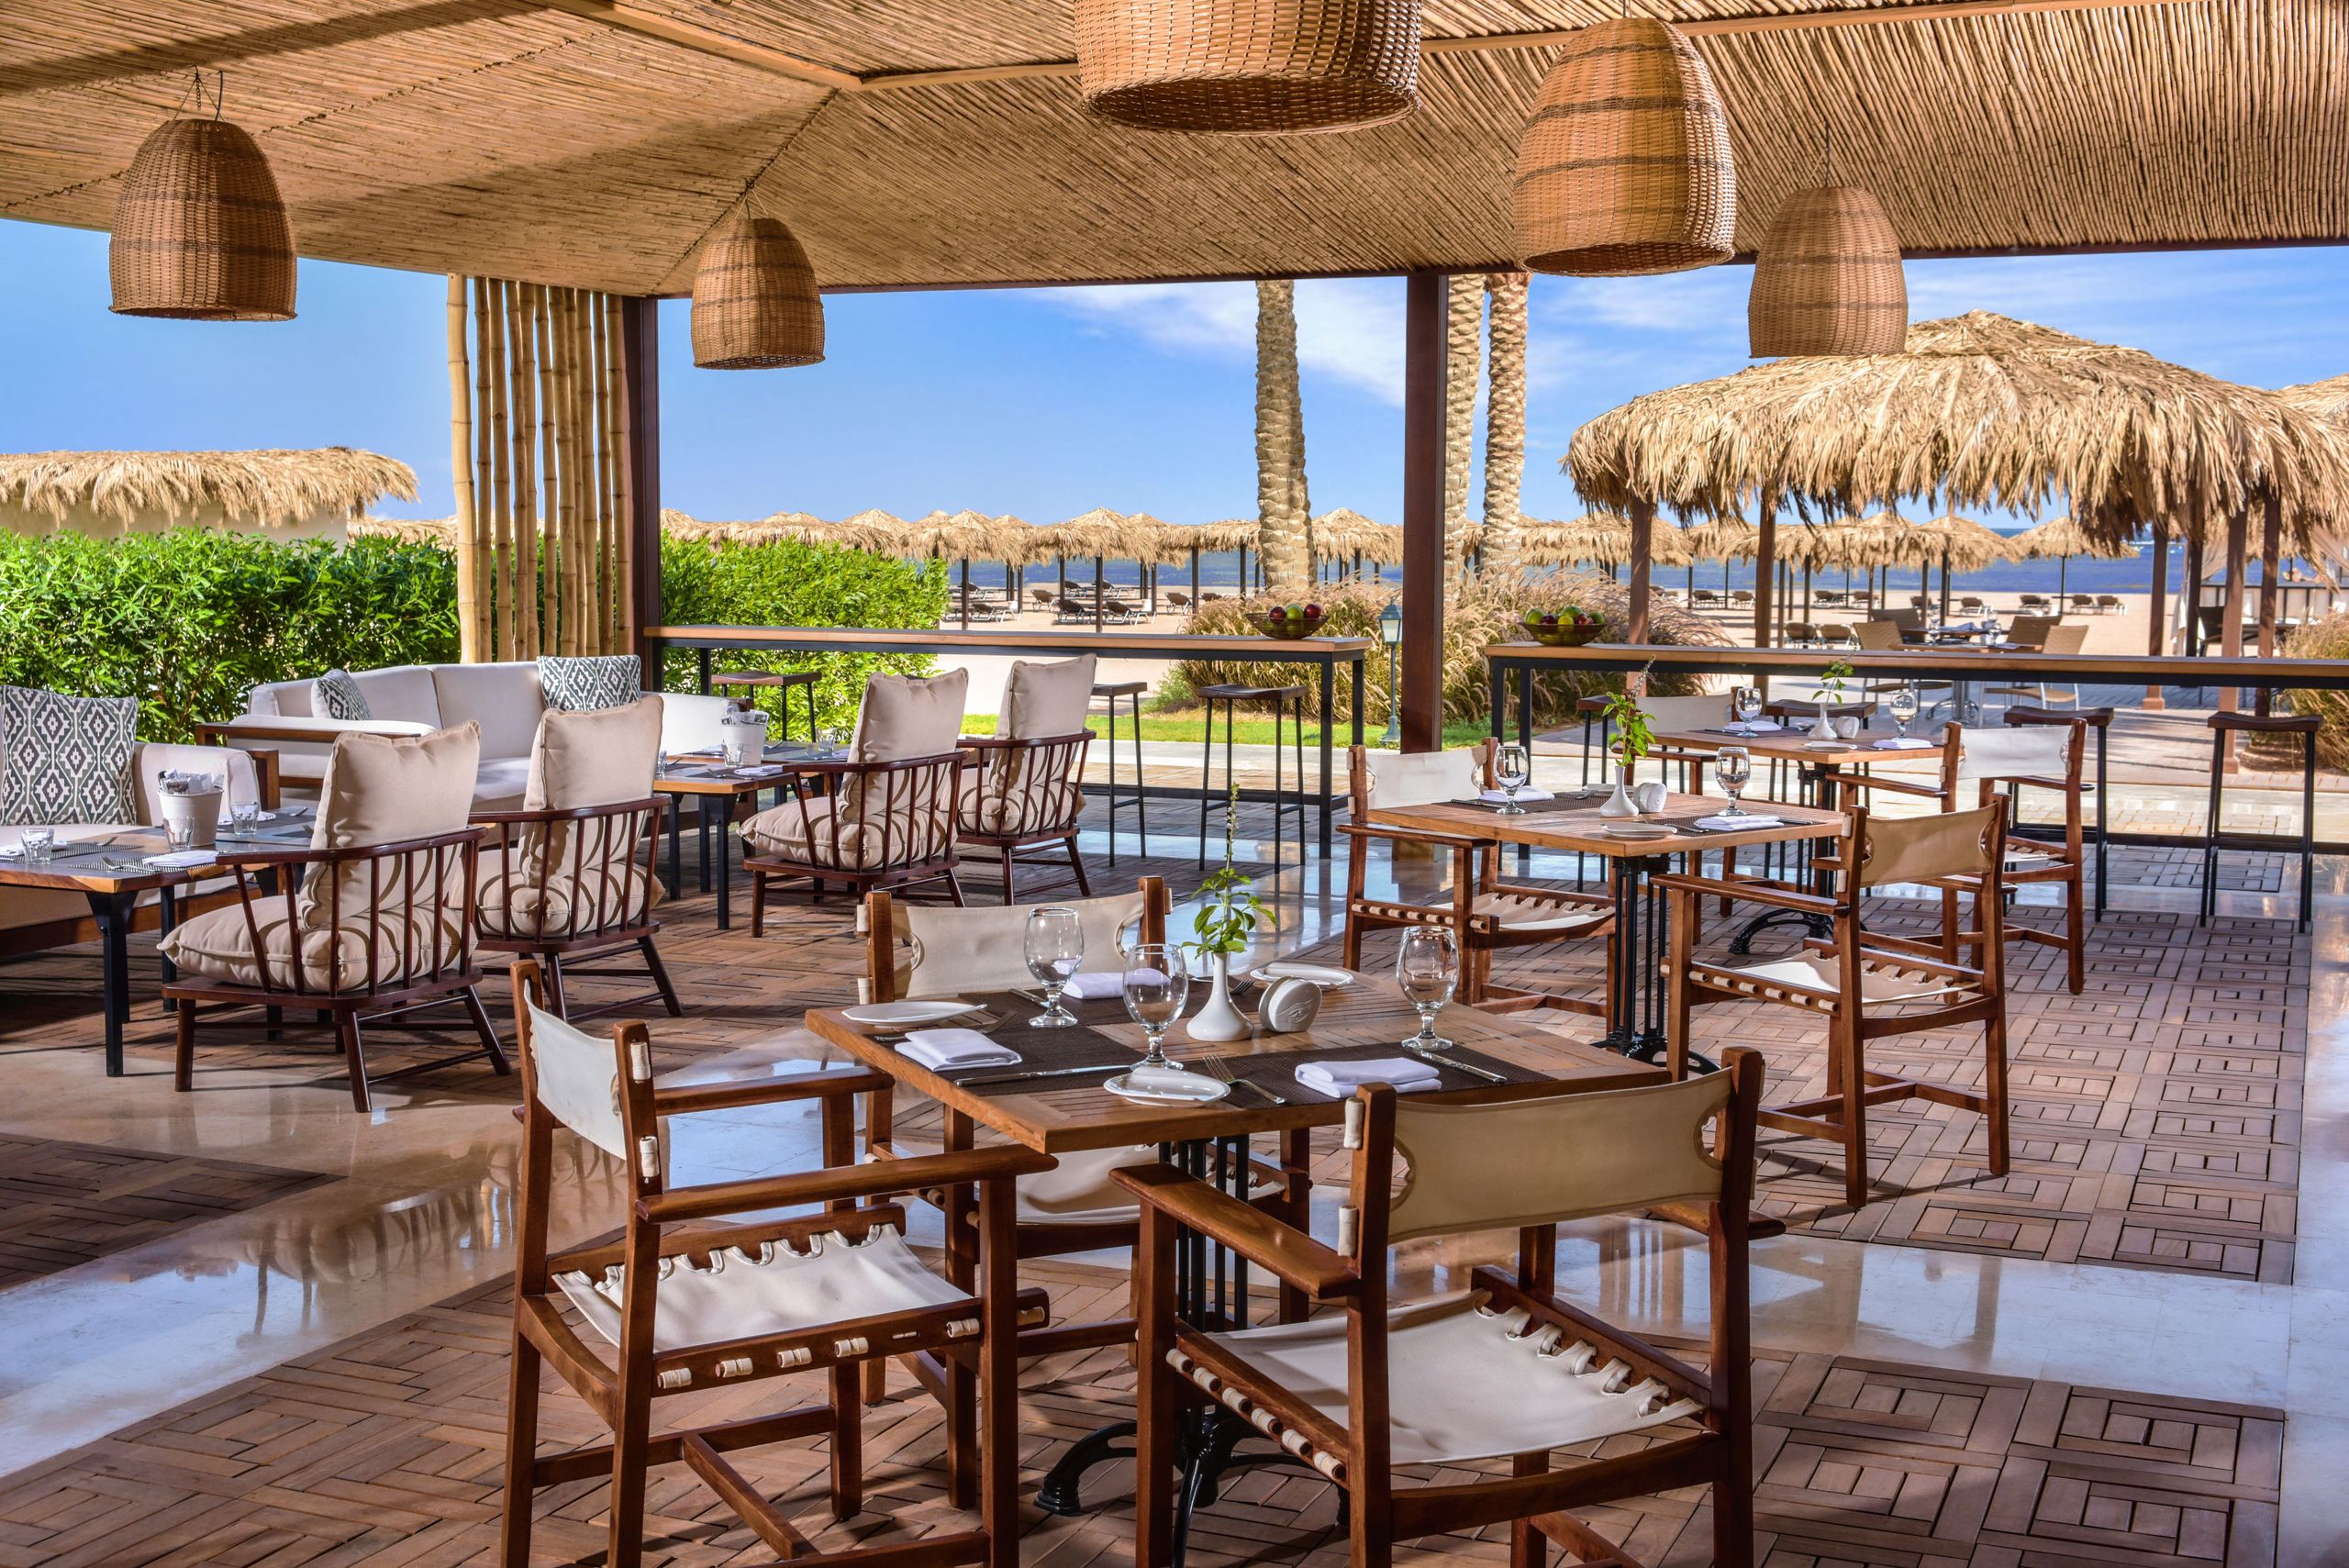 Steigenberger Alcazar - Sharm El Sheikh - Egyiptom - Sanafir étterem és strandbár